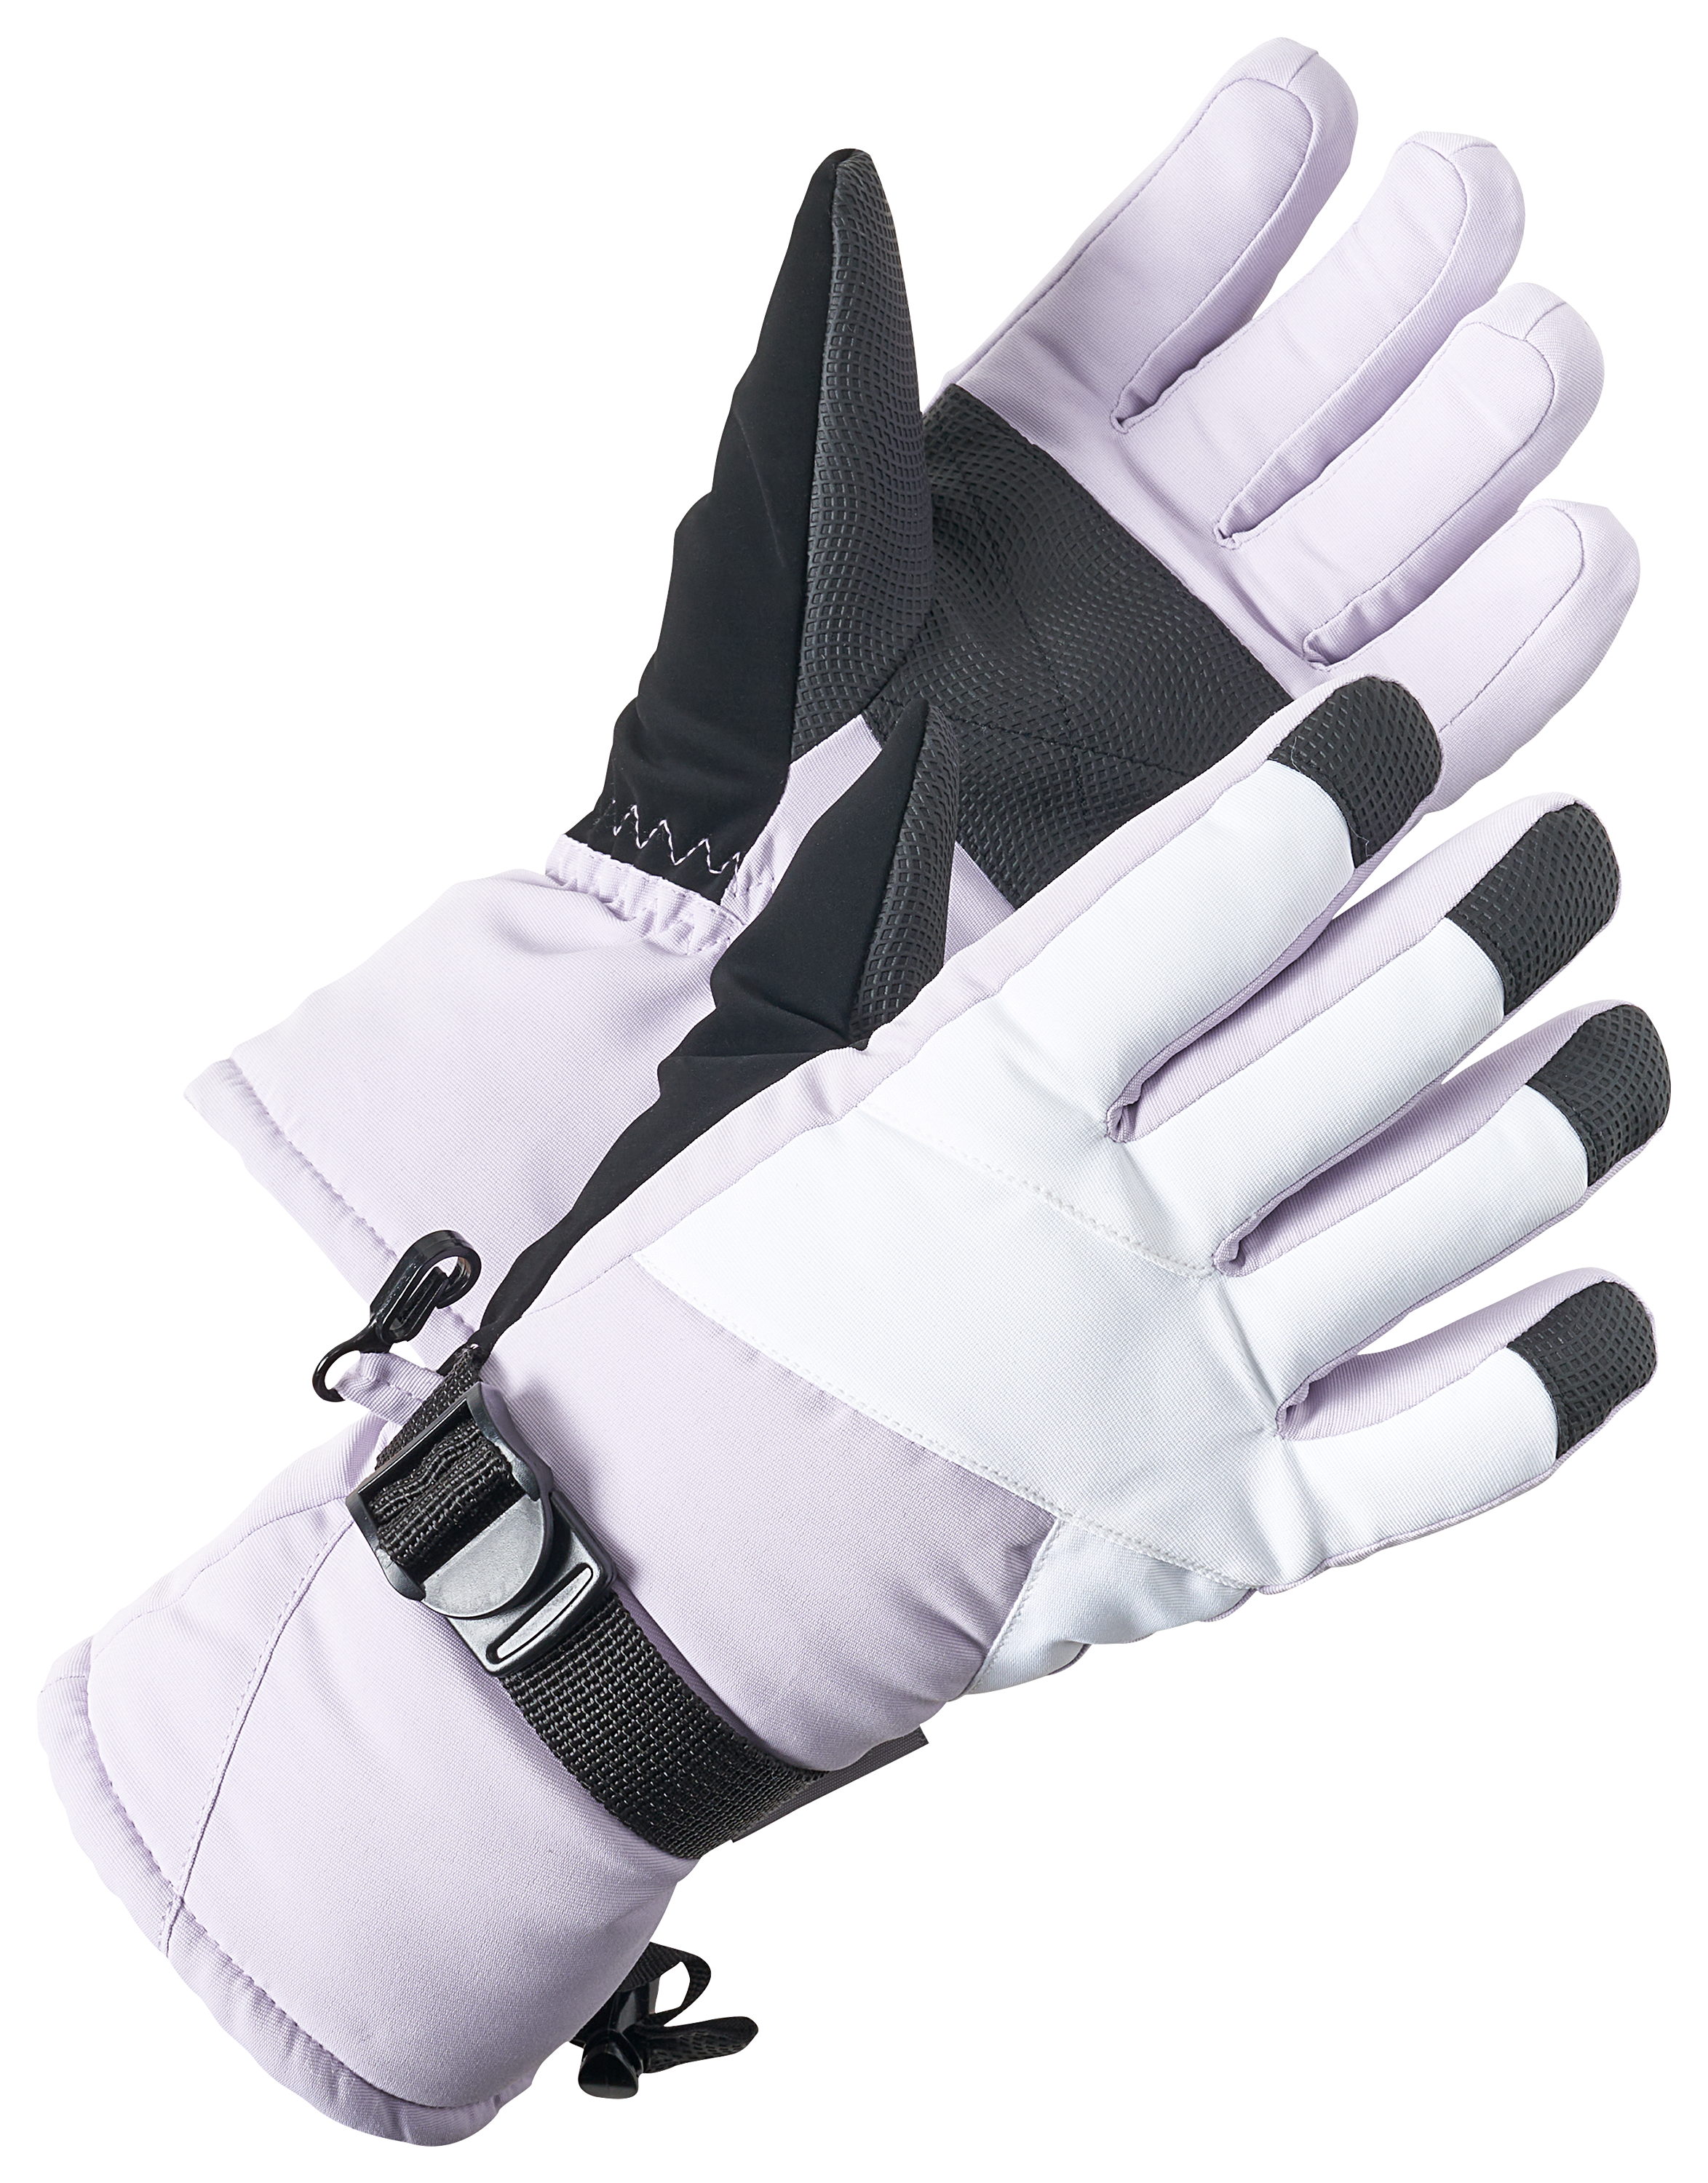 Grand Sierra Insulated Ski Gloves for Kids